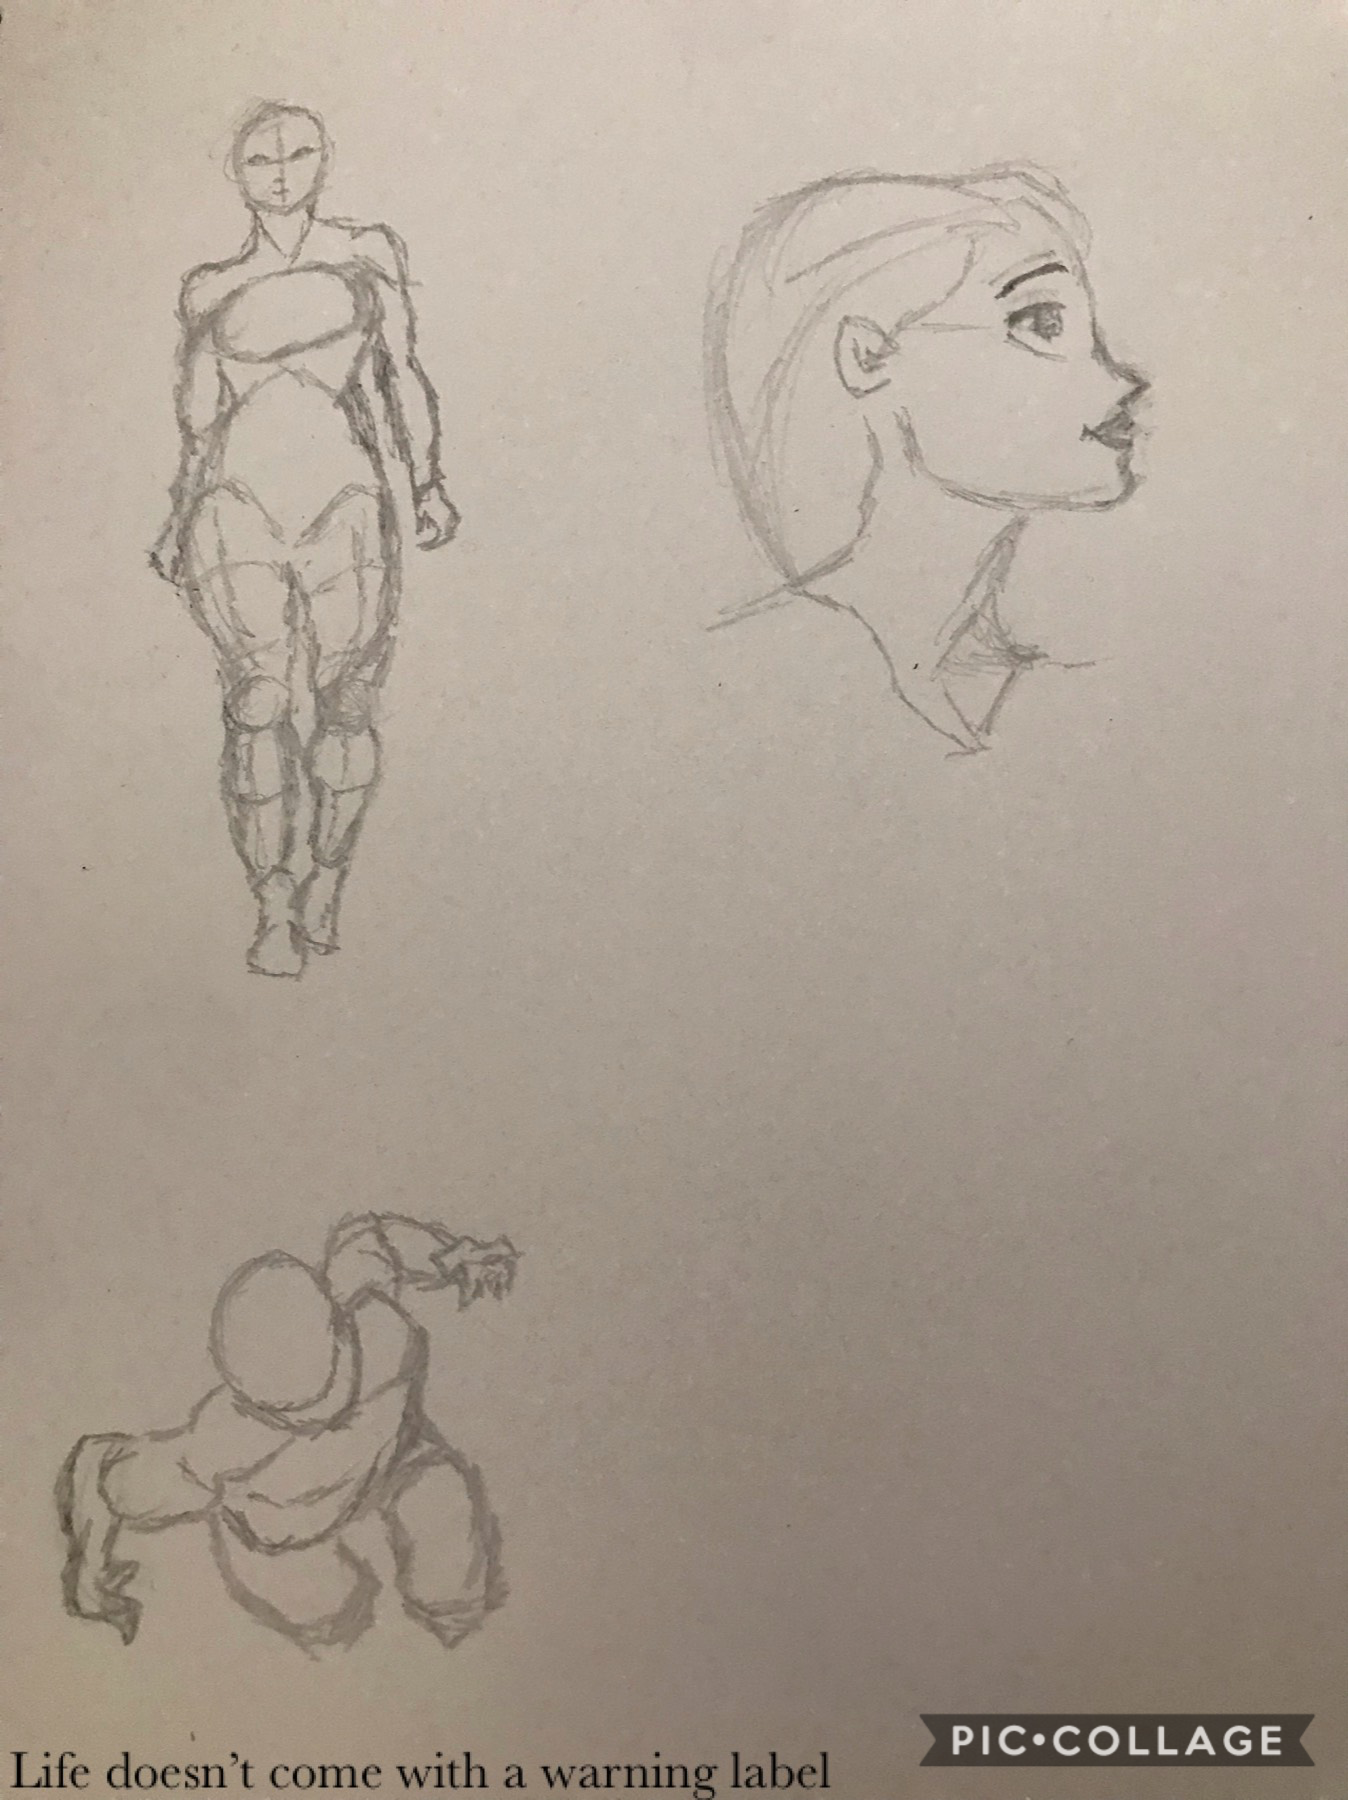 More drawings